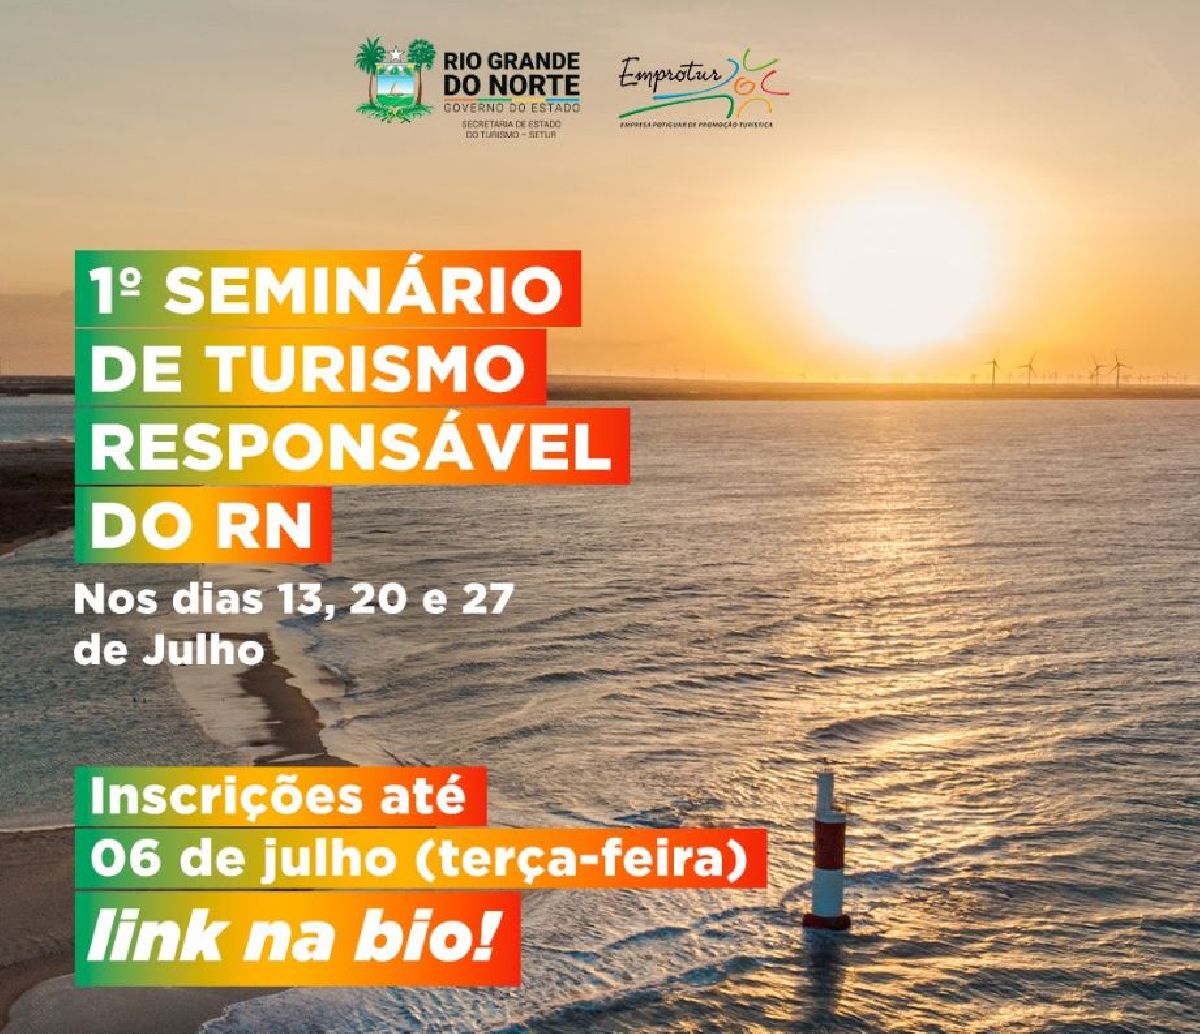 RIO GRANDE DO NORTE PROMOVE 1º SEMINÁRIO DE TURISMO RESPONSÁVEL